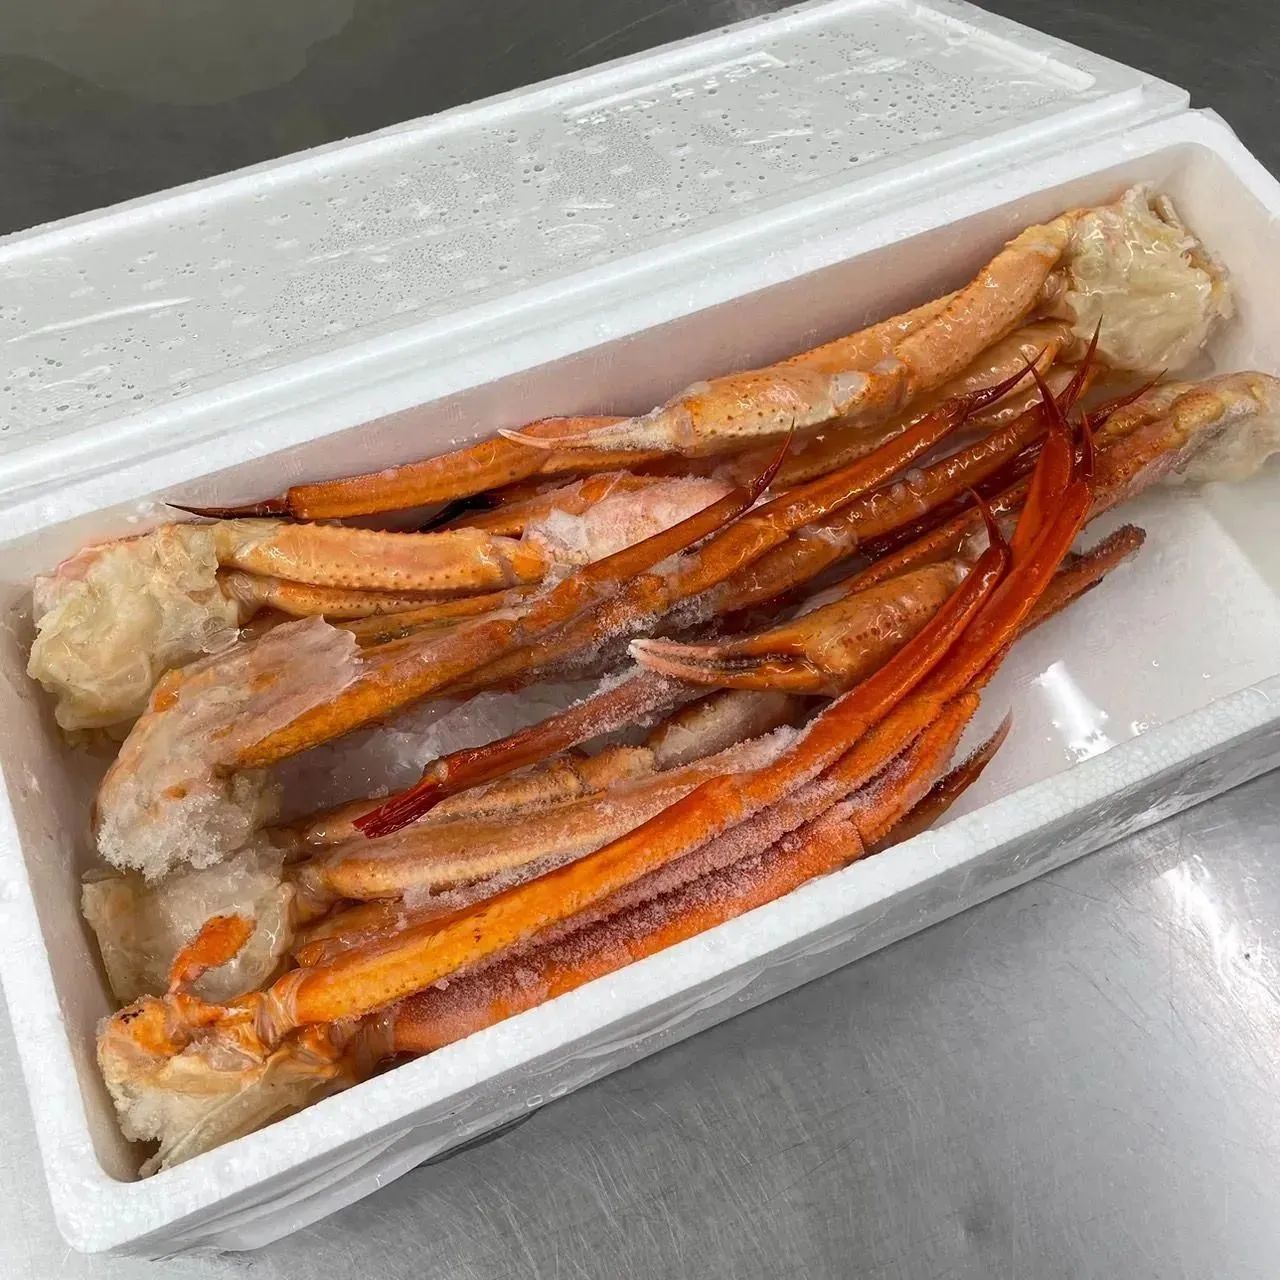 トゲズワイガニ 1.5kg - 魚介類(加工食品)